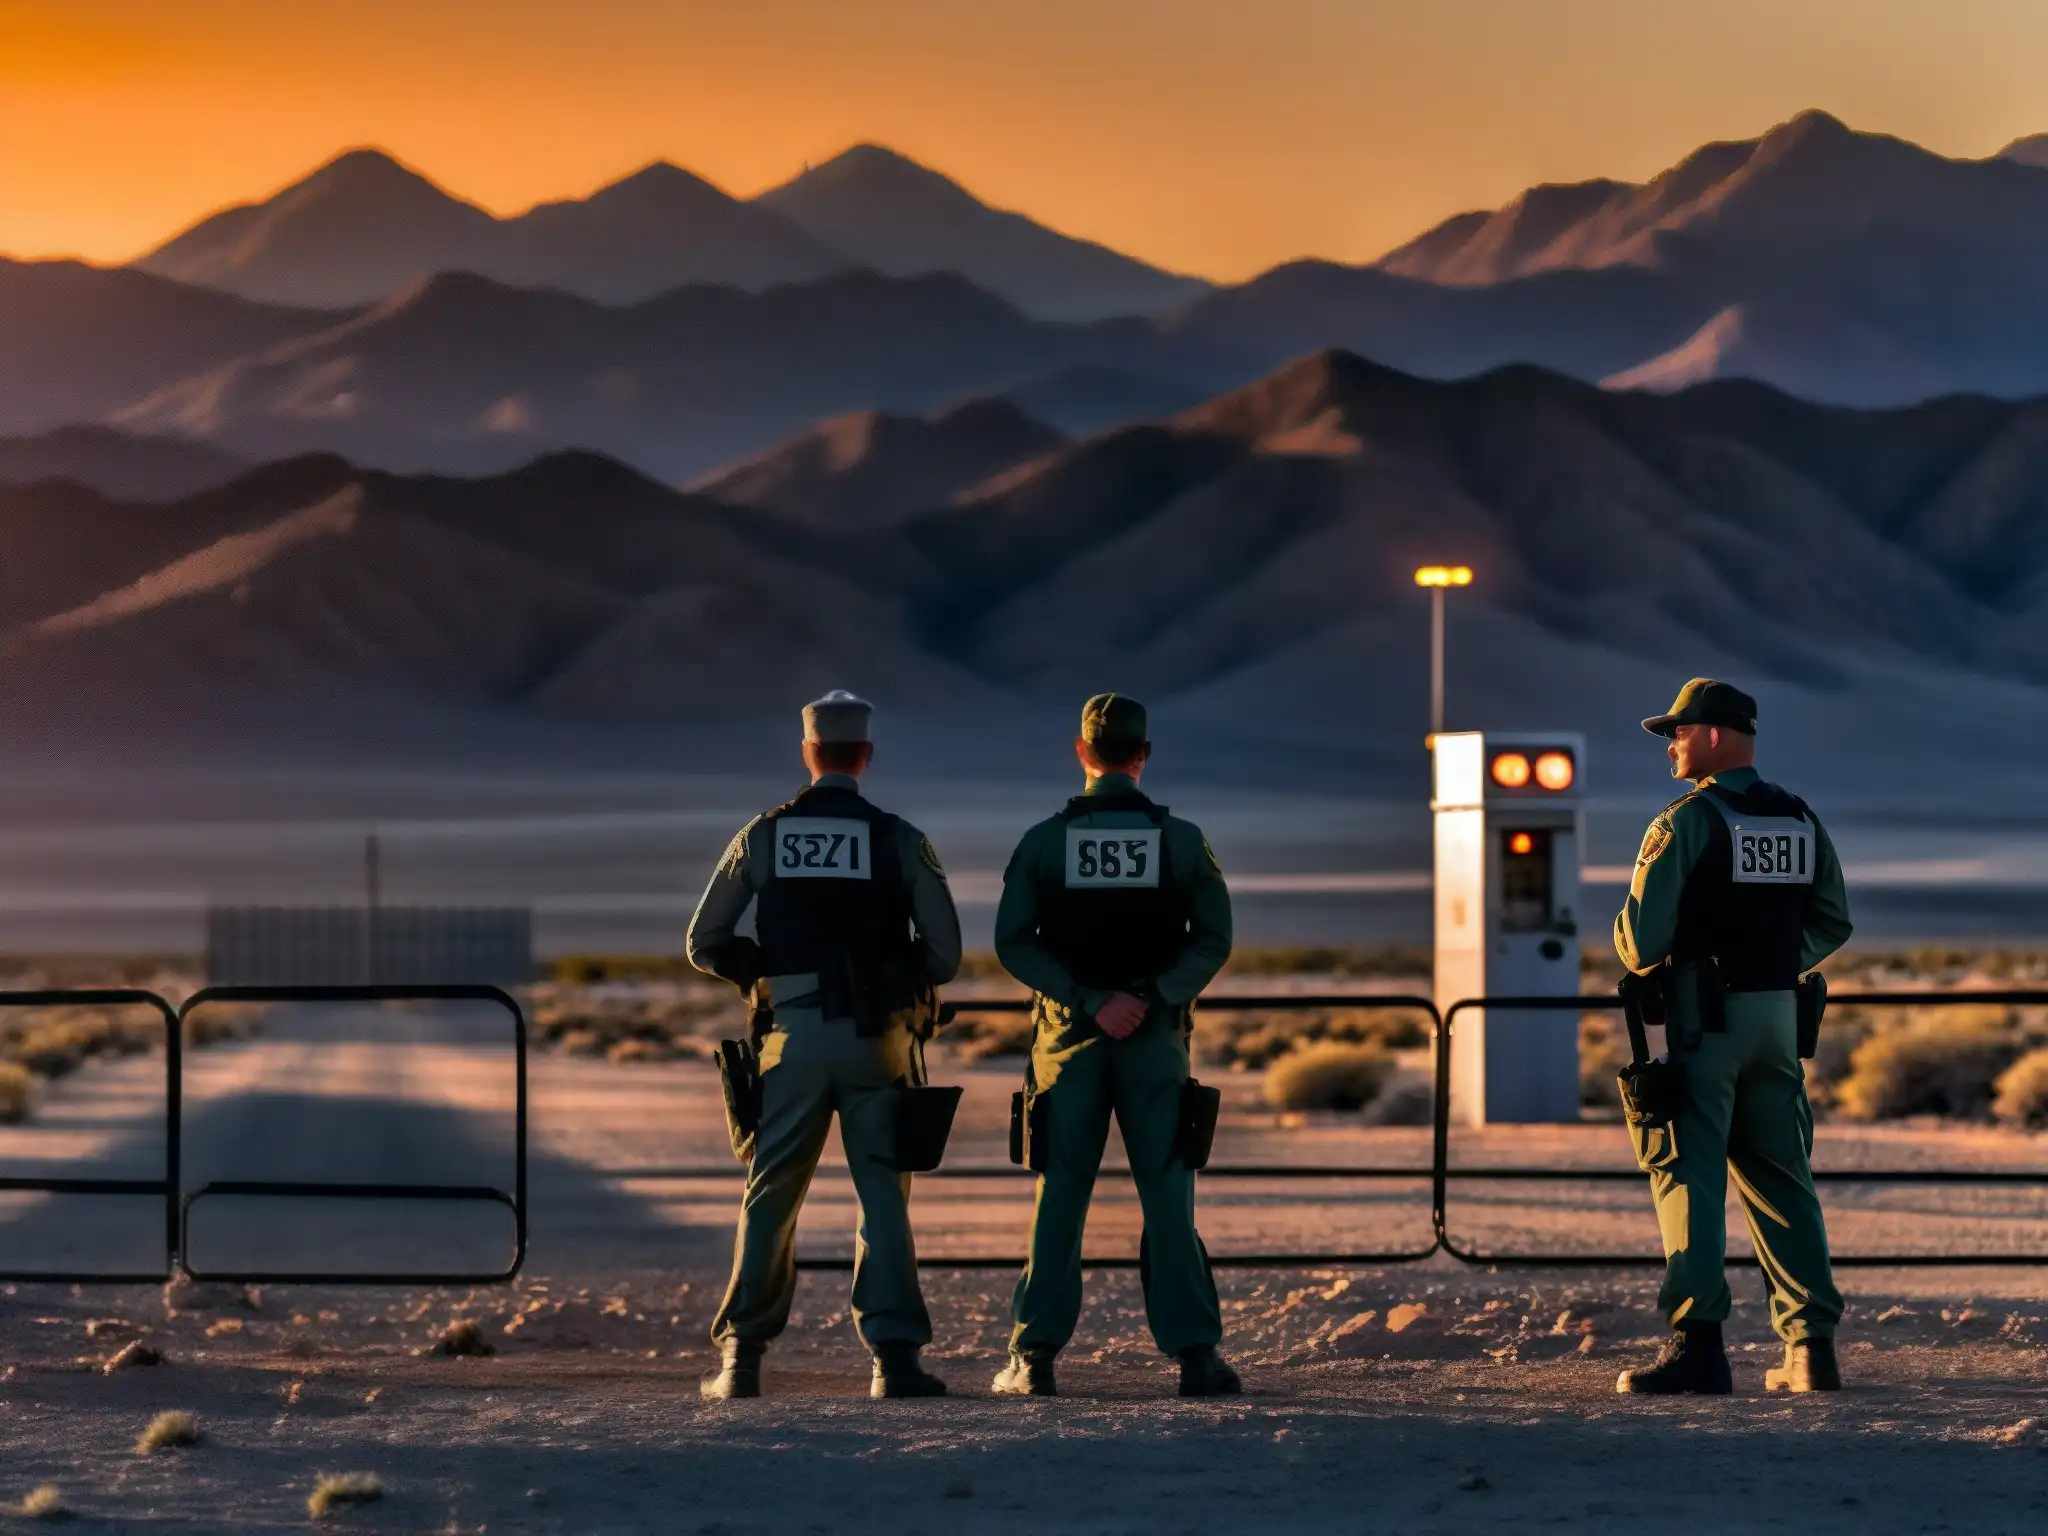 Un grupo de personal de seguridad custodia las fortificadas puertas del Área 51 al atardecer, creando un ambiente misterioso